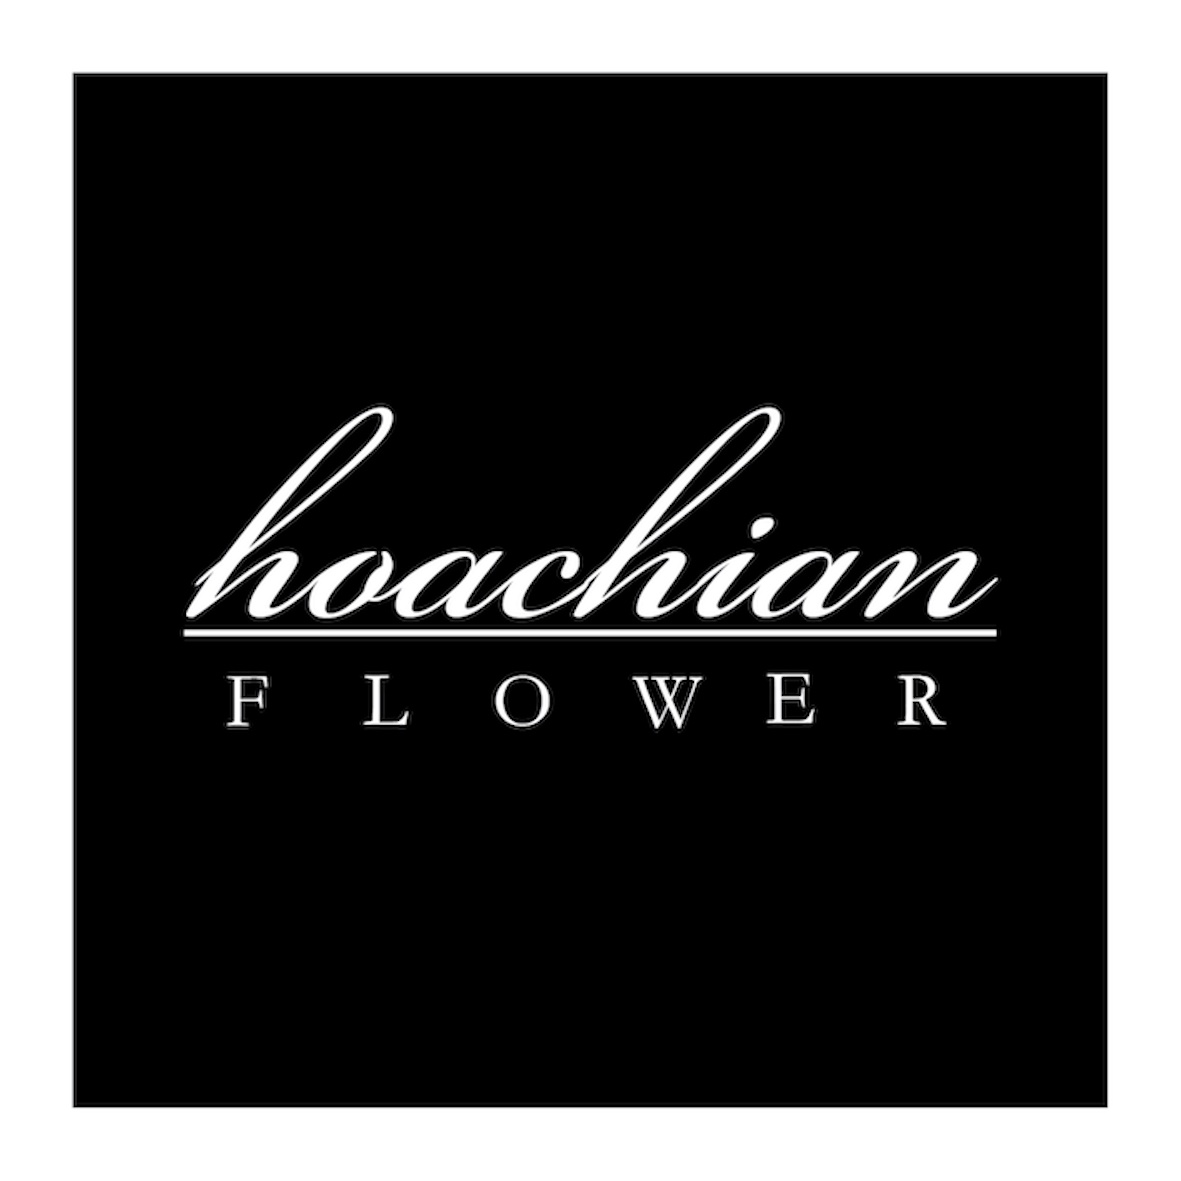 hoachian FLOWER